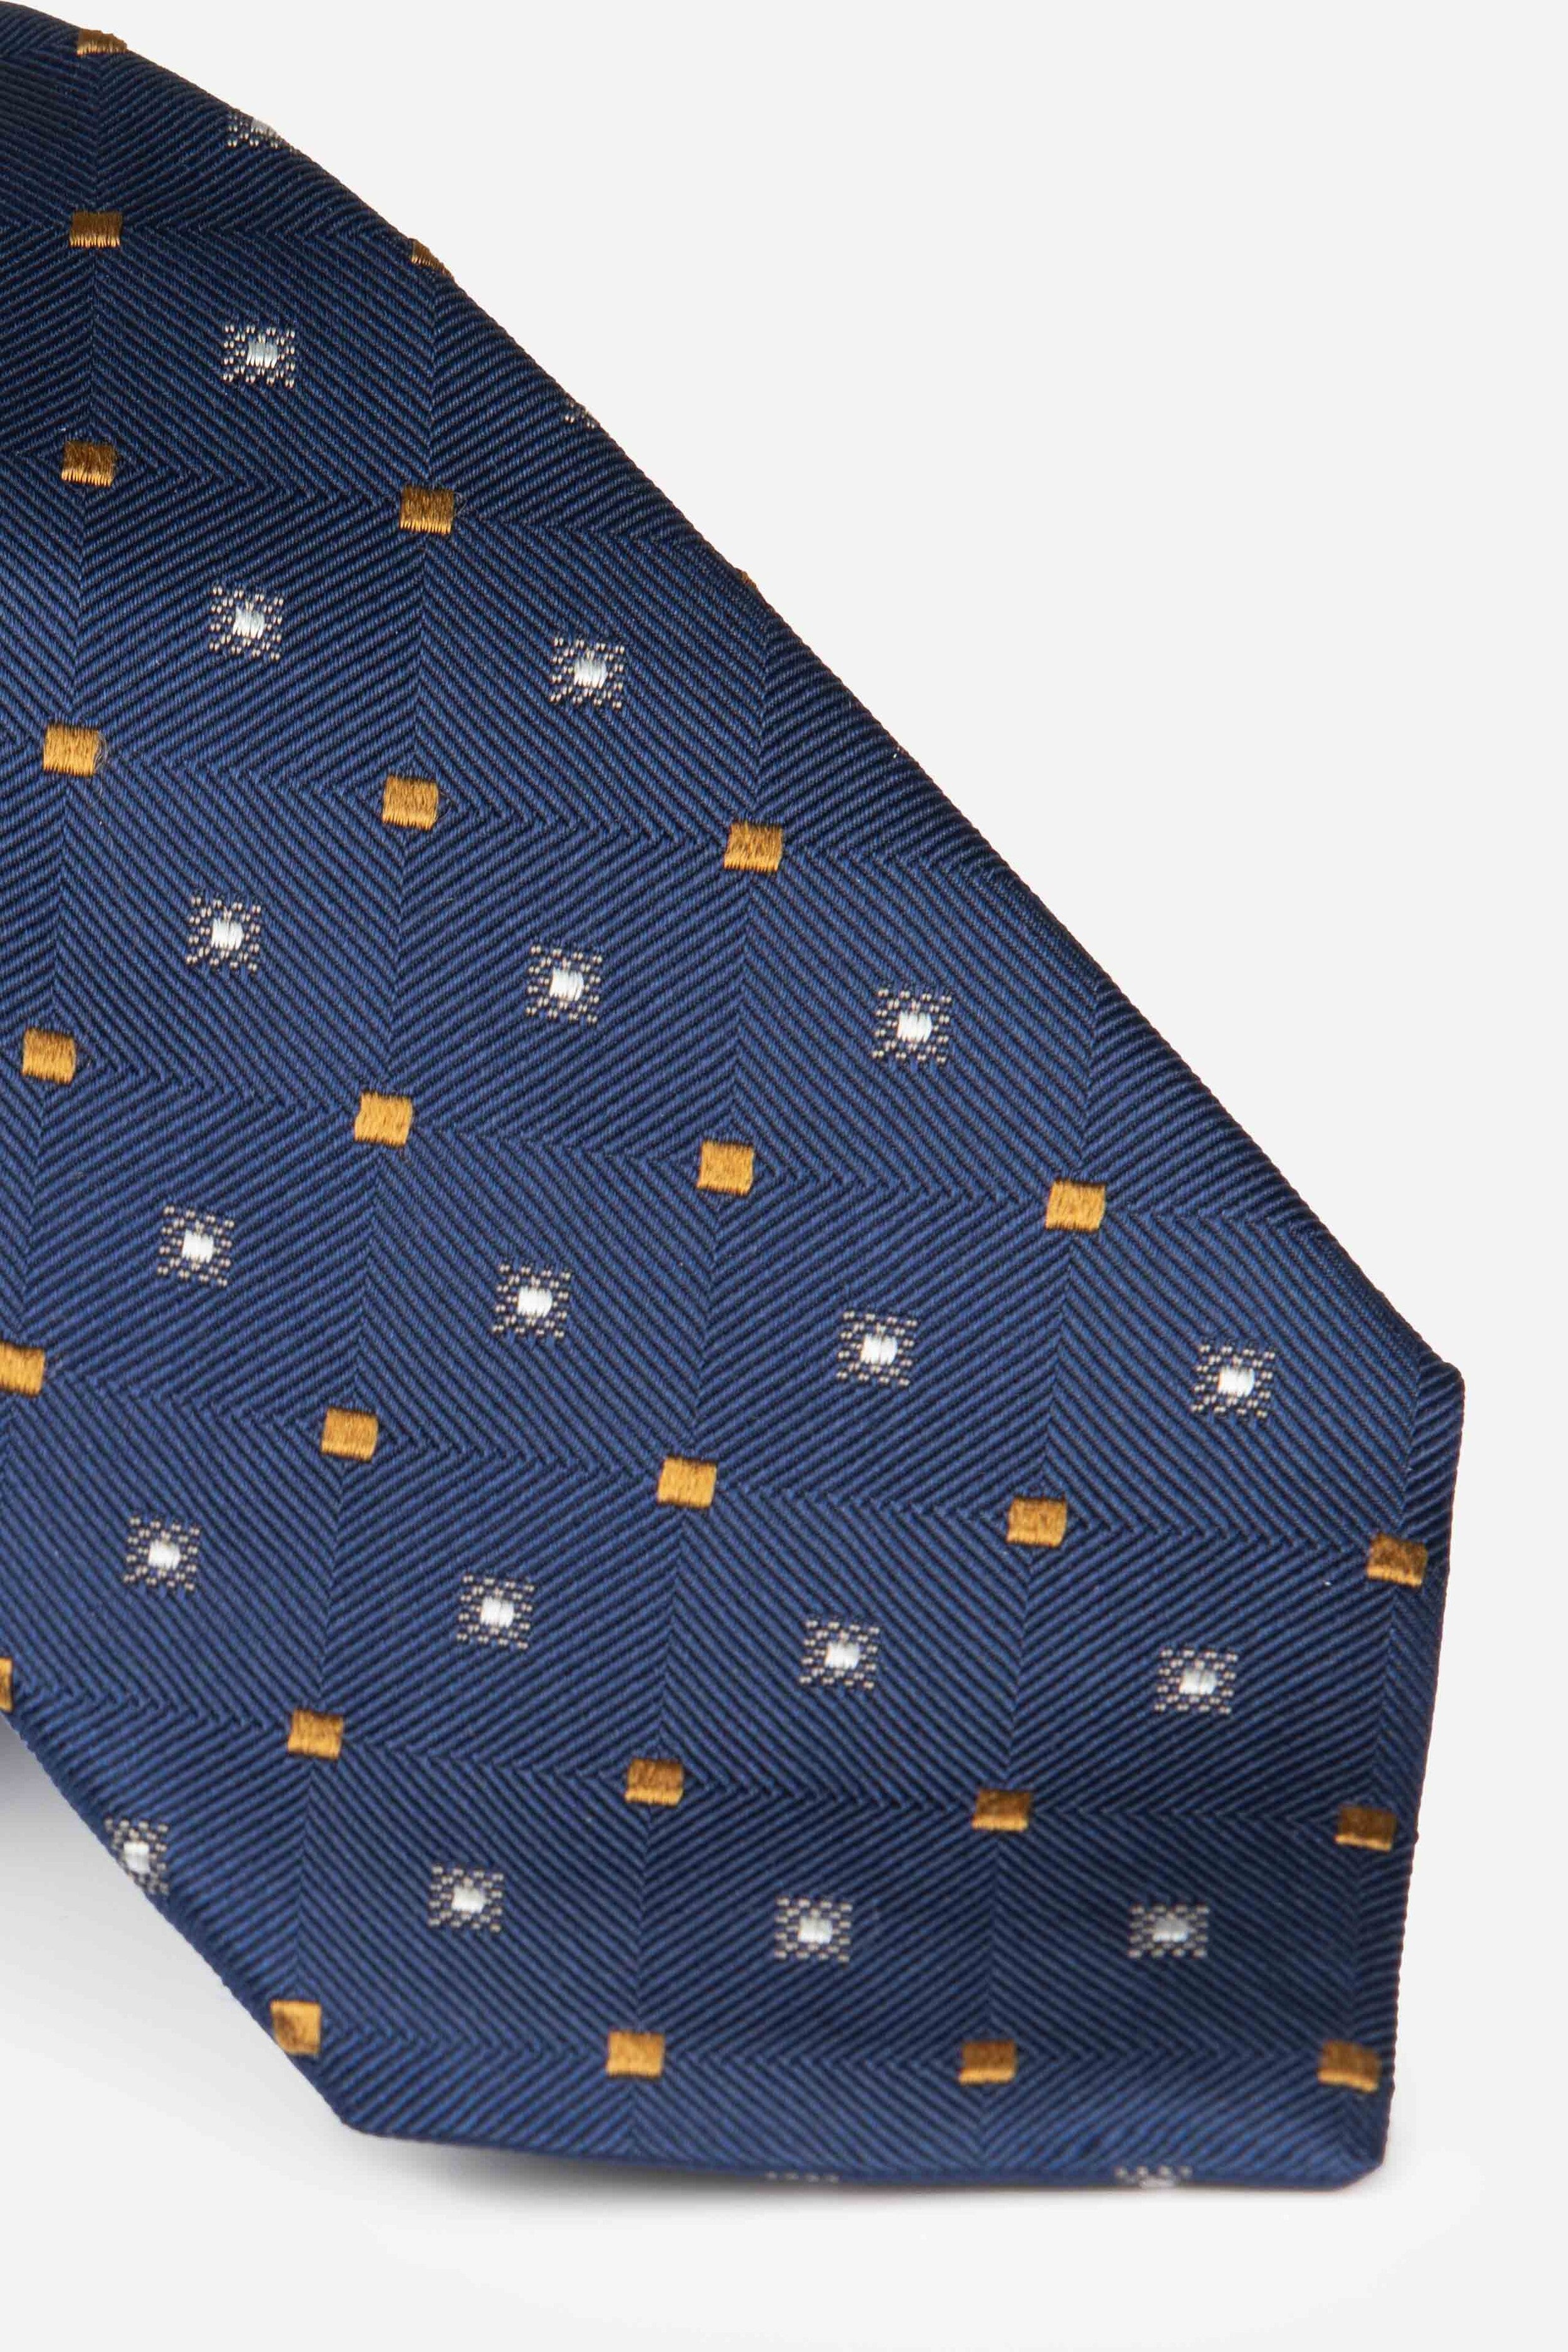 Plaid patterned tie - Bluette check